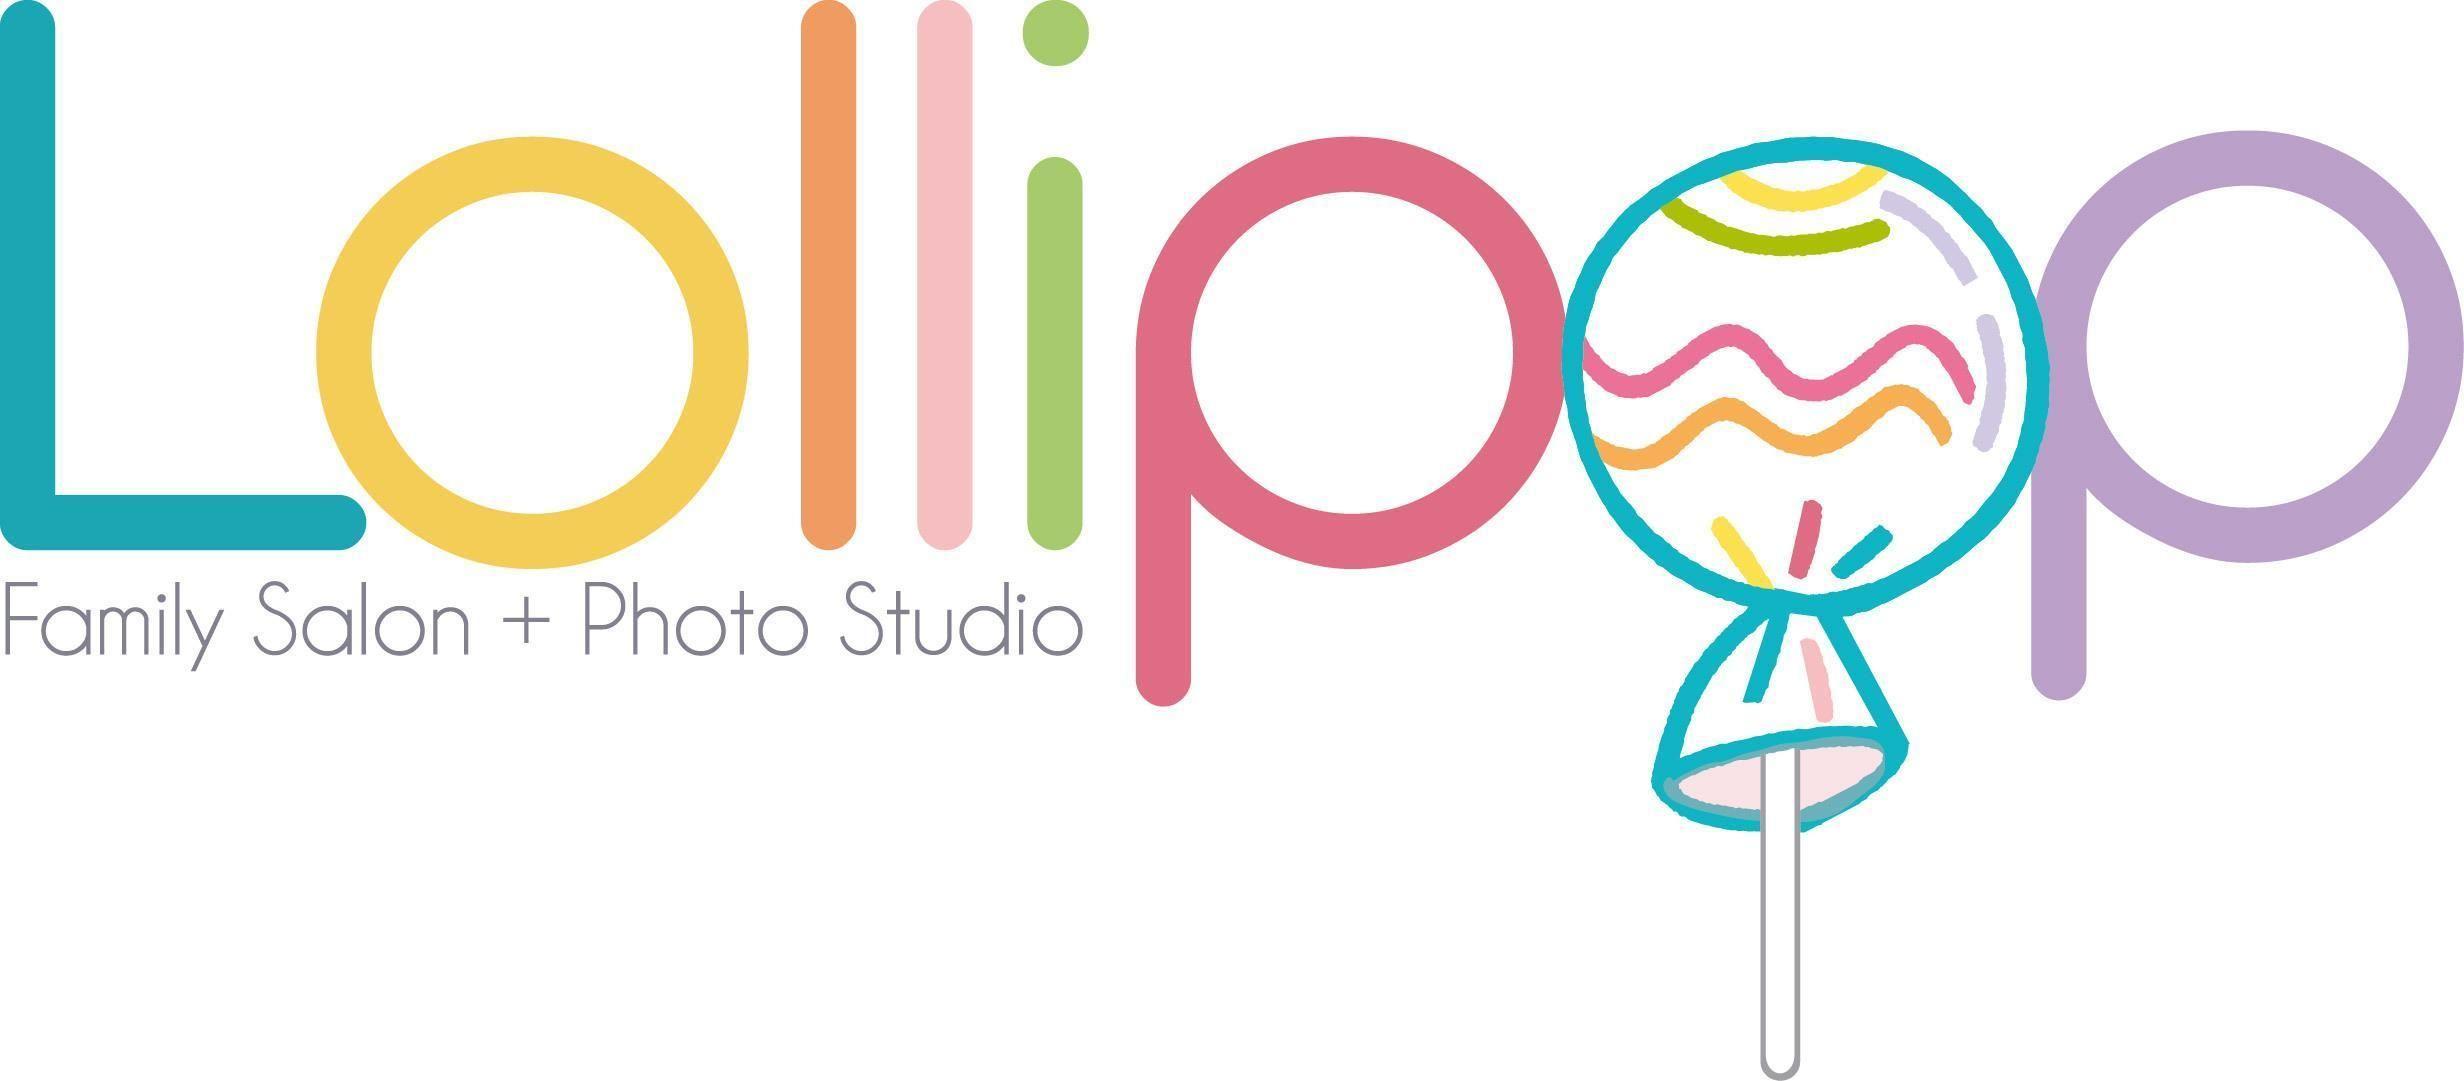 Lollipop Logo - Lollipop Family Salon & Photo Studio - Overview, News & Competitors ...